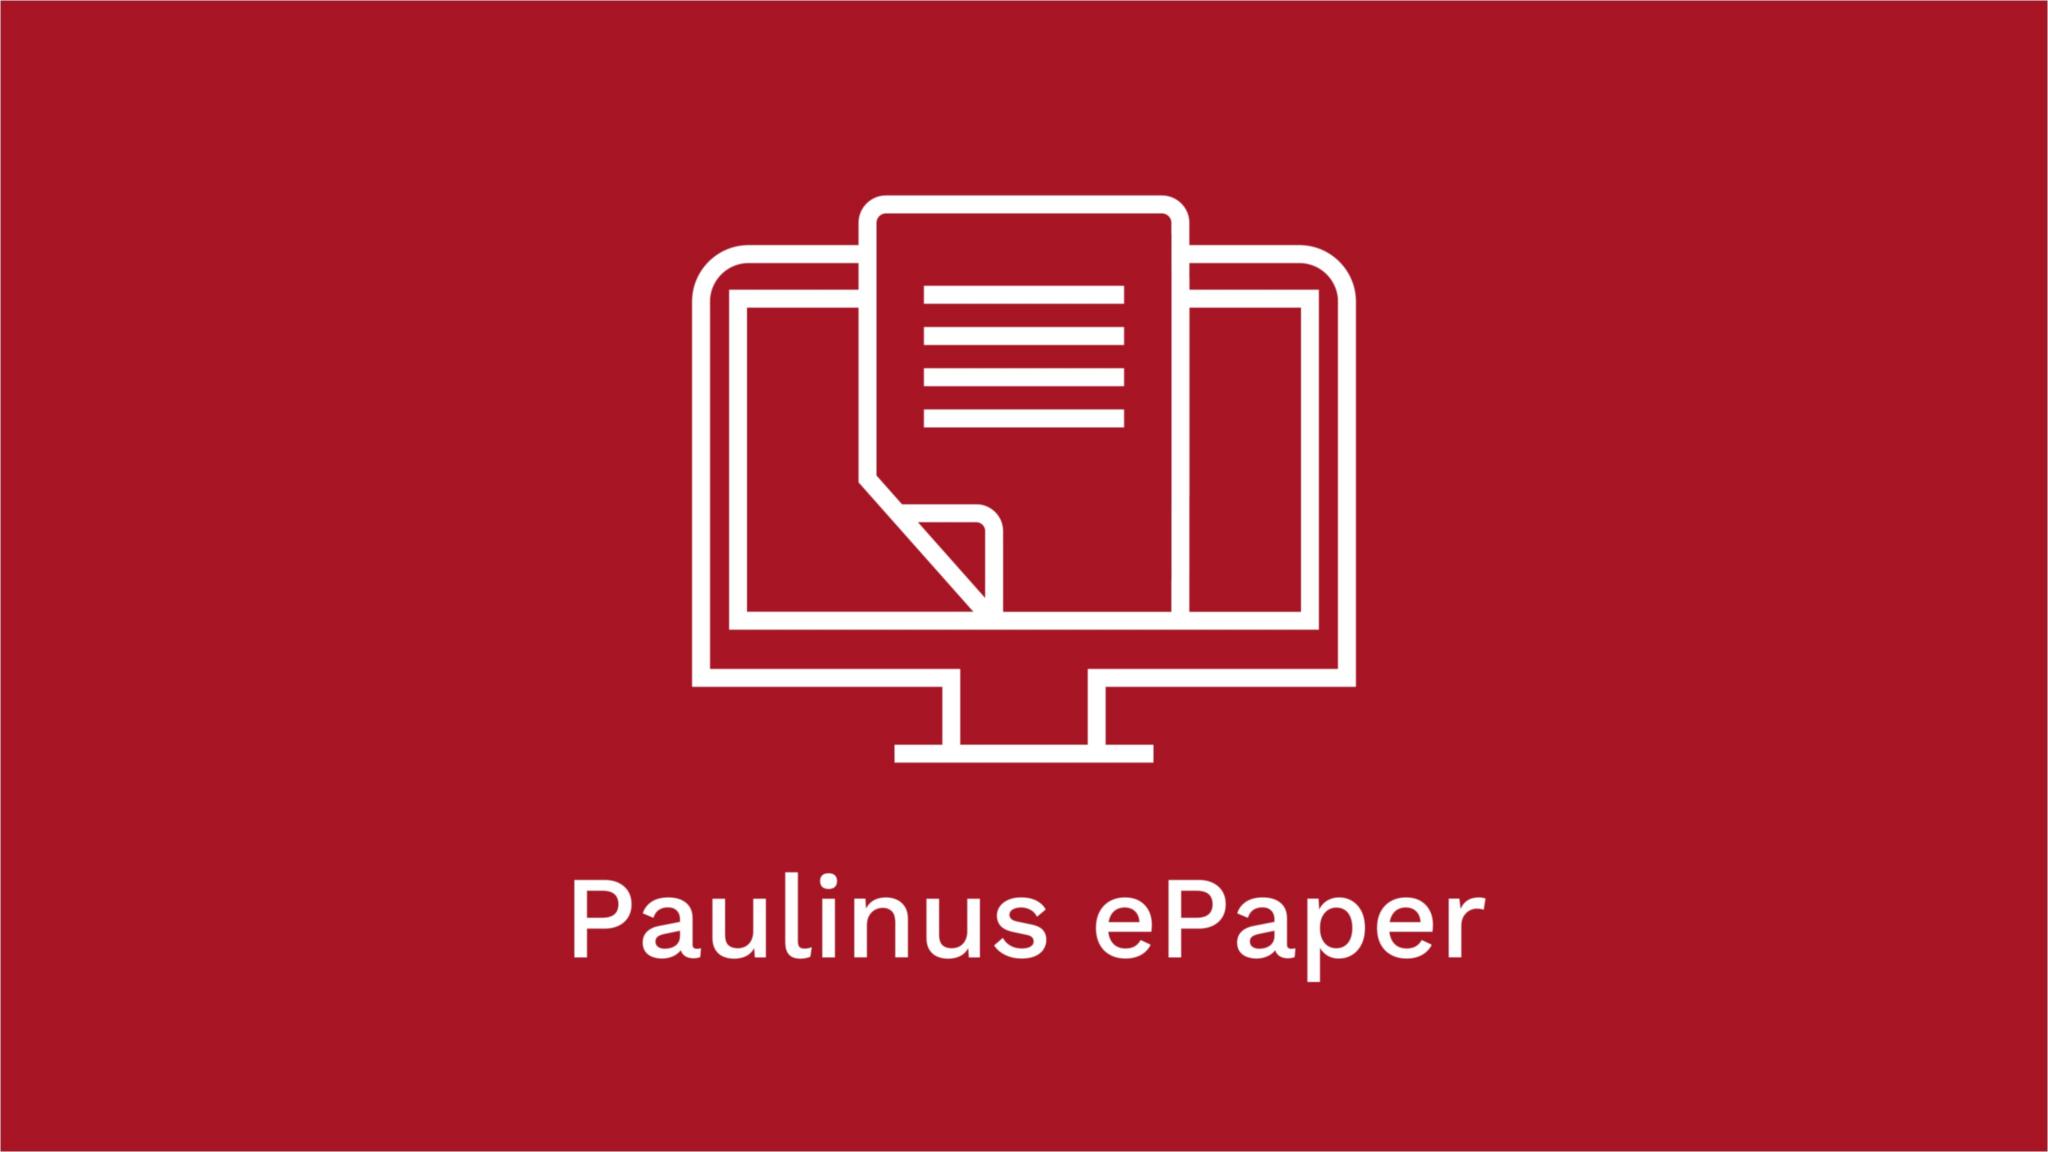 Paulinus ePaper